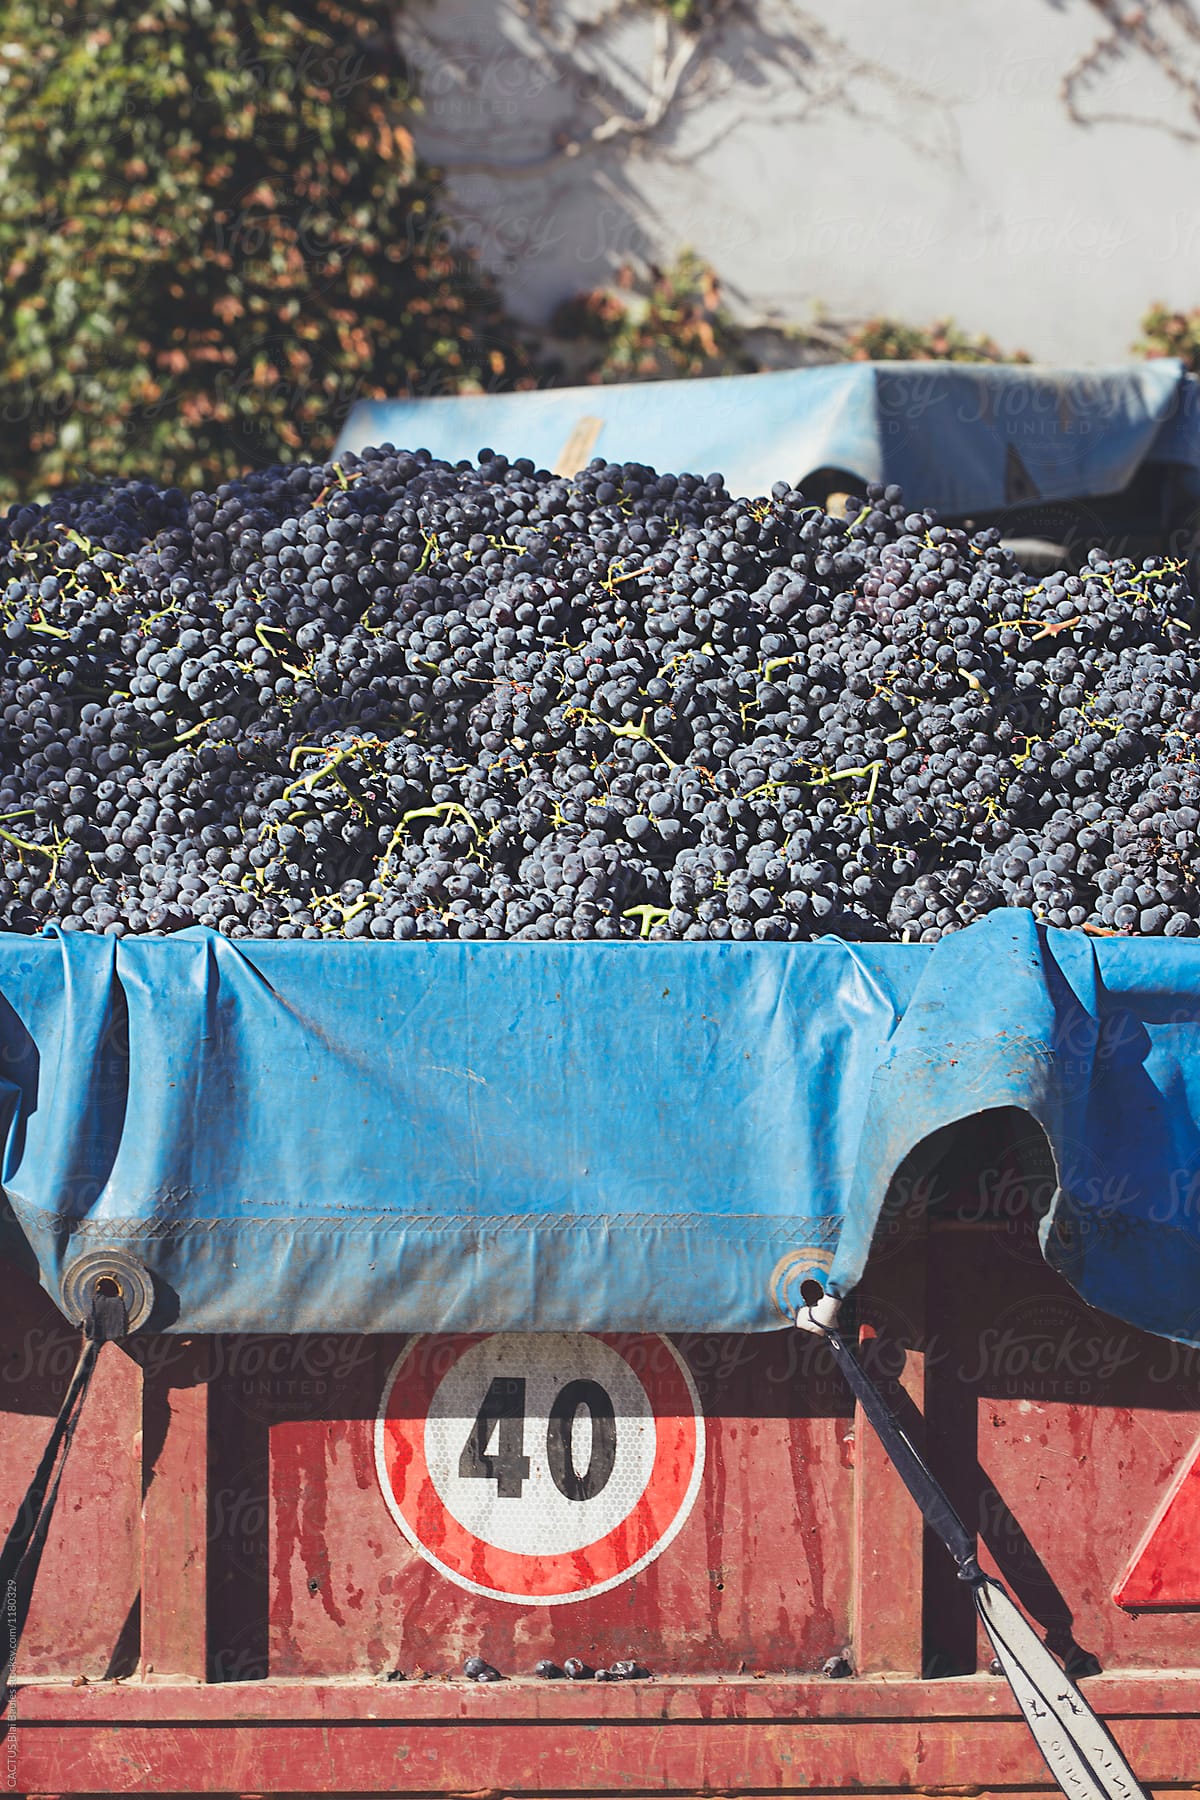 Wine grape harvest